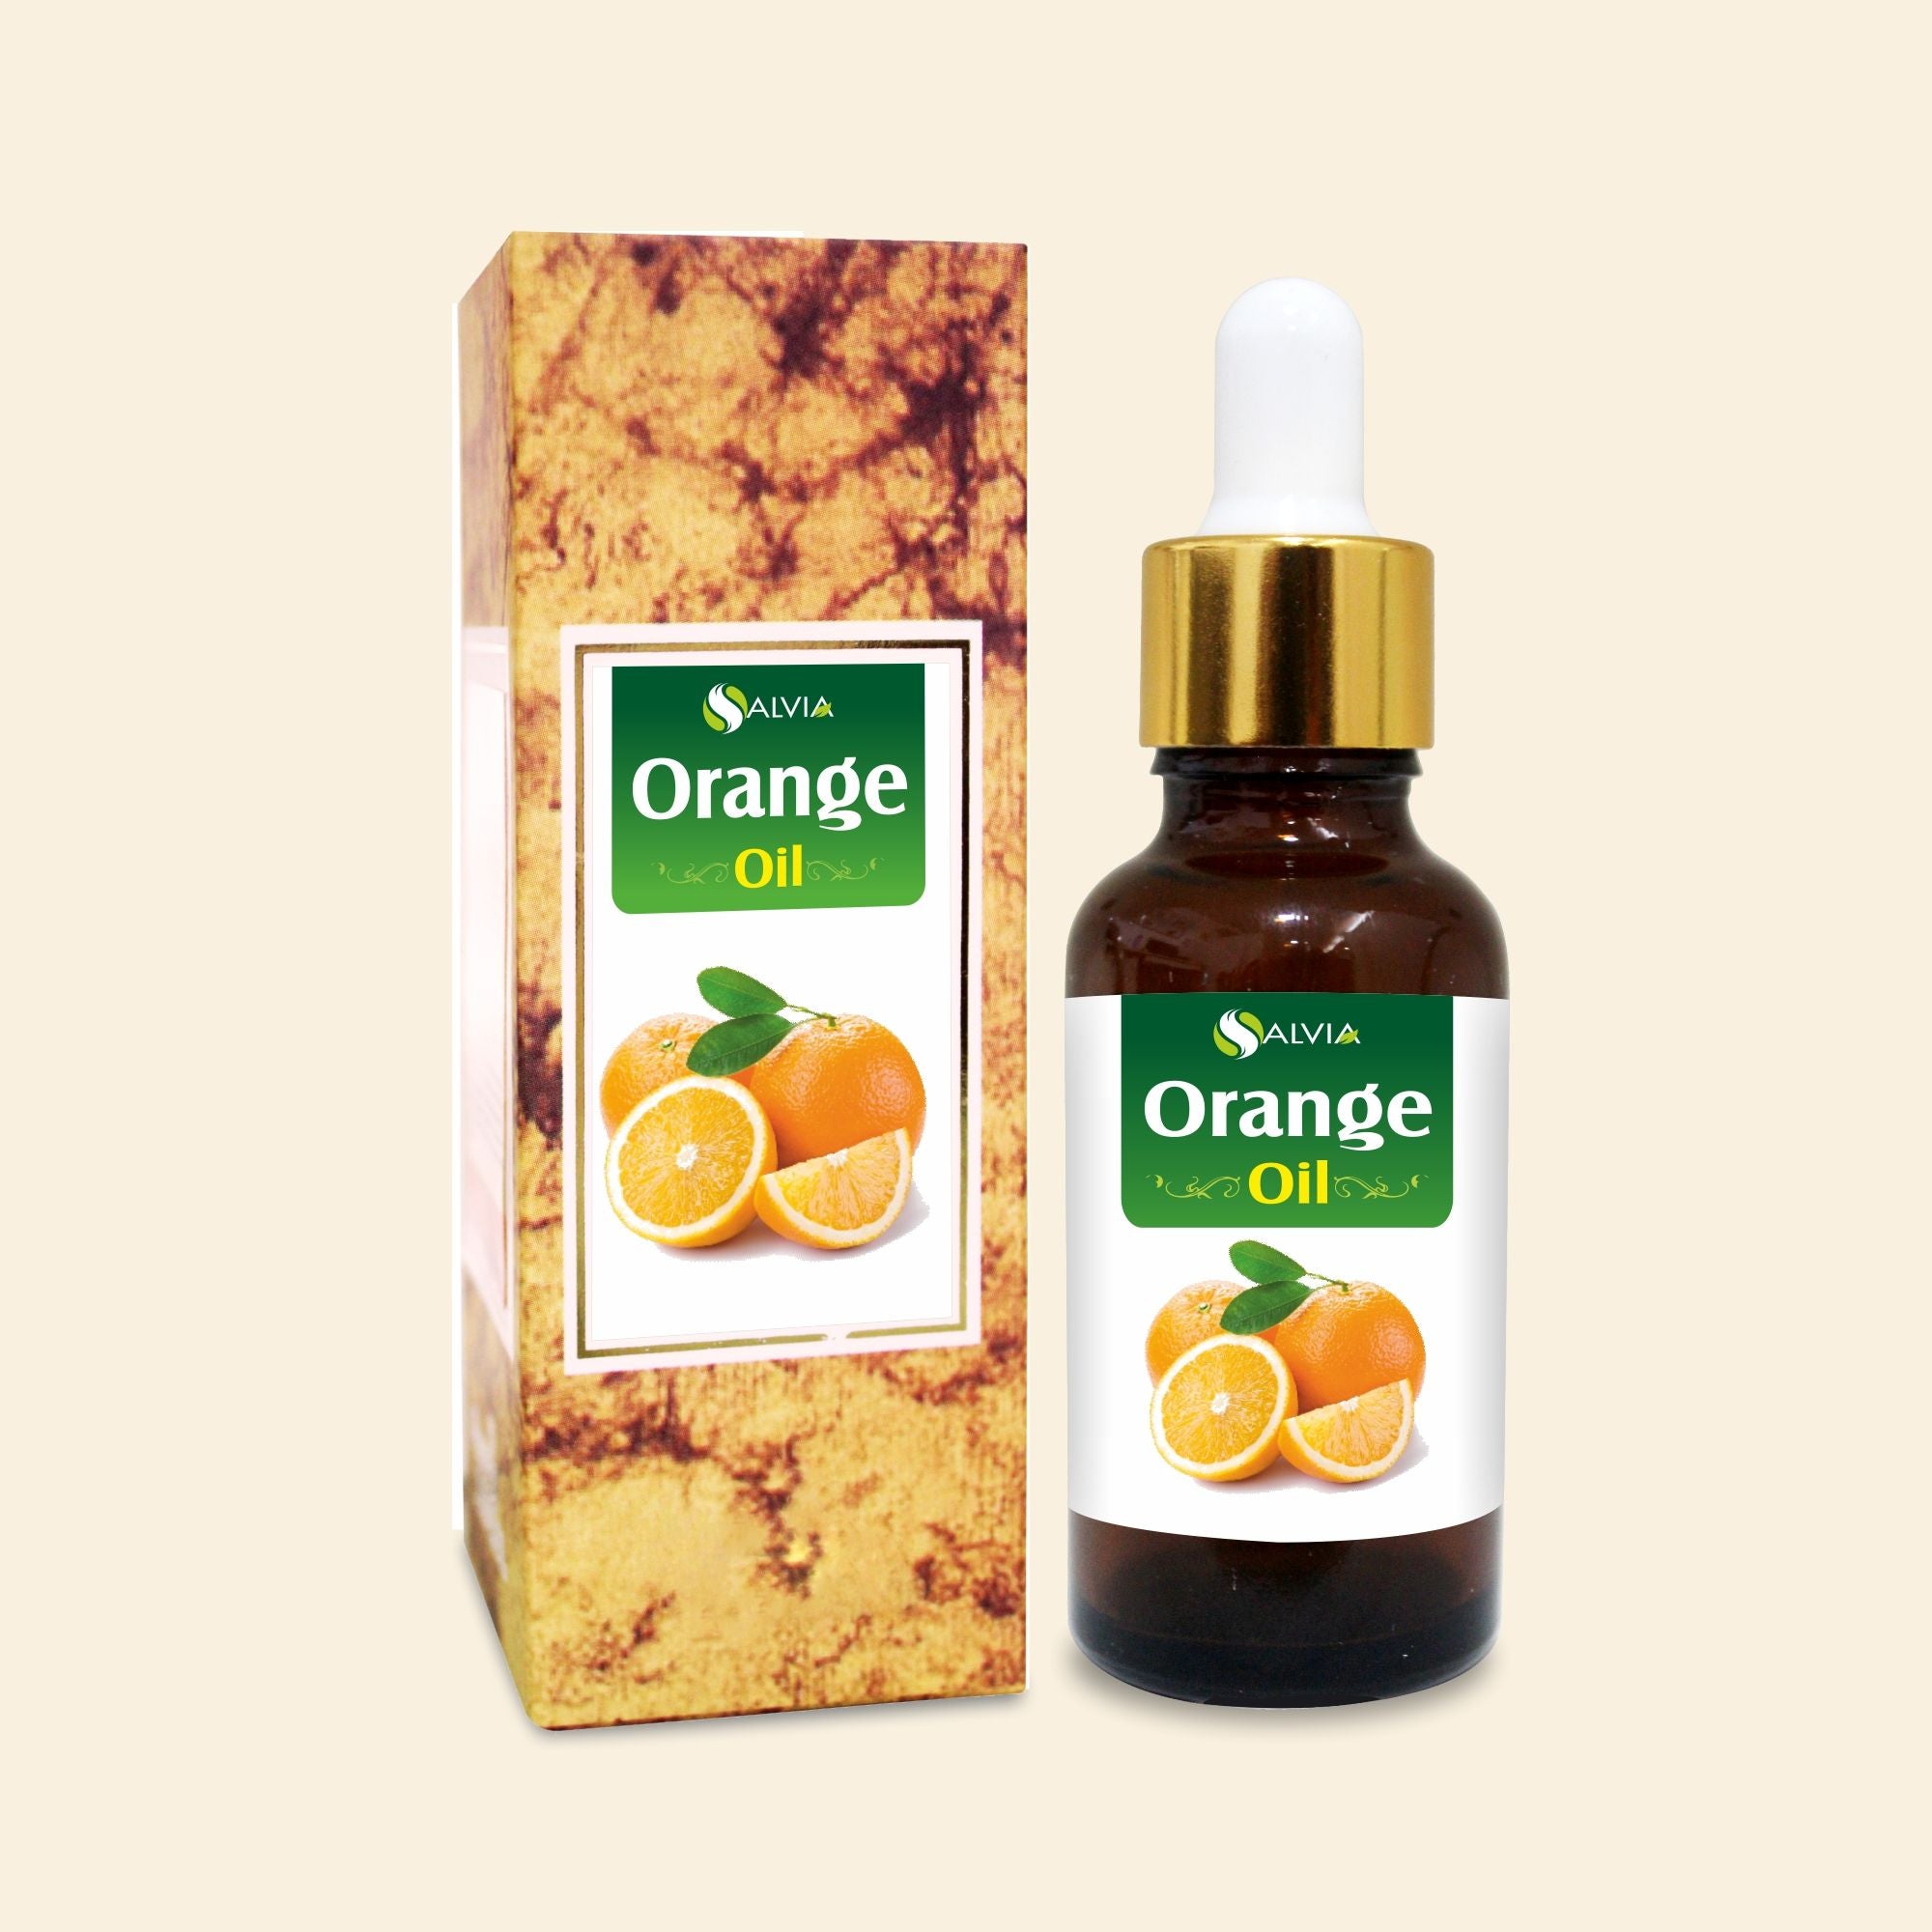 Salvia Natural Essential Oils Orange Oil (Citrus sinensis) 100% Natural Pure Essential Oil